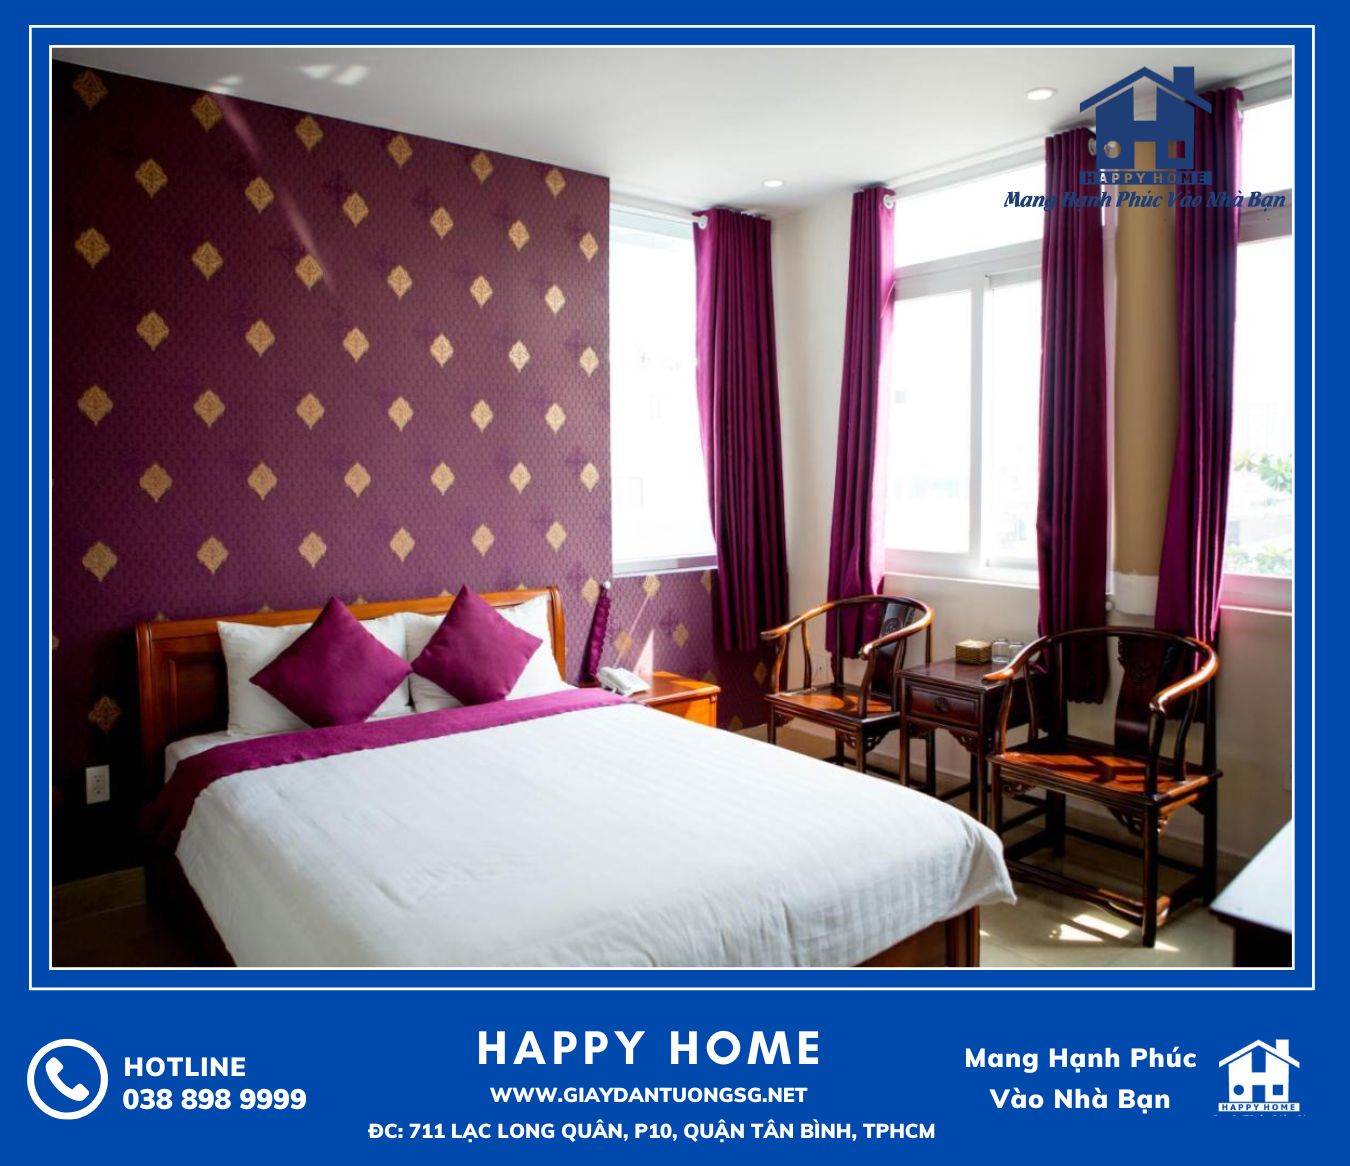 Mỗi không gian phòng ngủ được trang trí bởi một màu sắc giấy dán tường khác nhau mang đến nhiều trải nghiệm khác nhau cho khách hàng